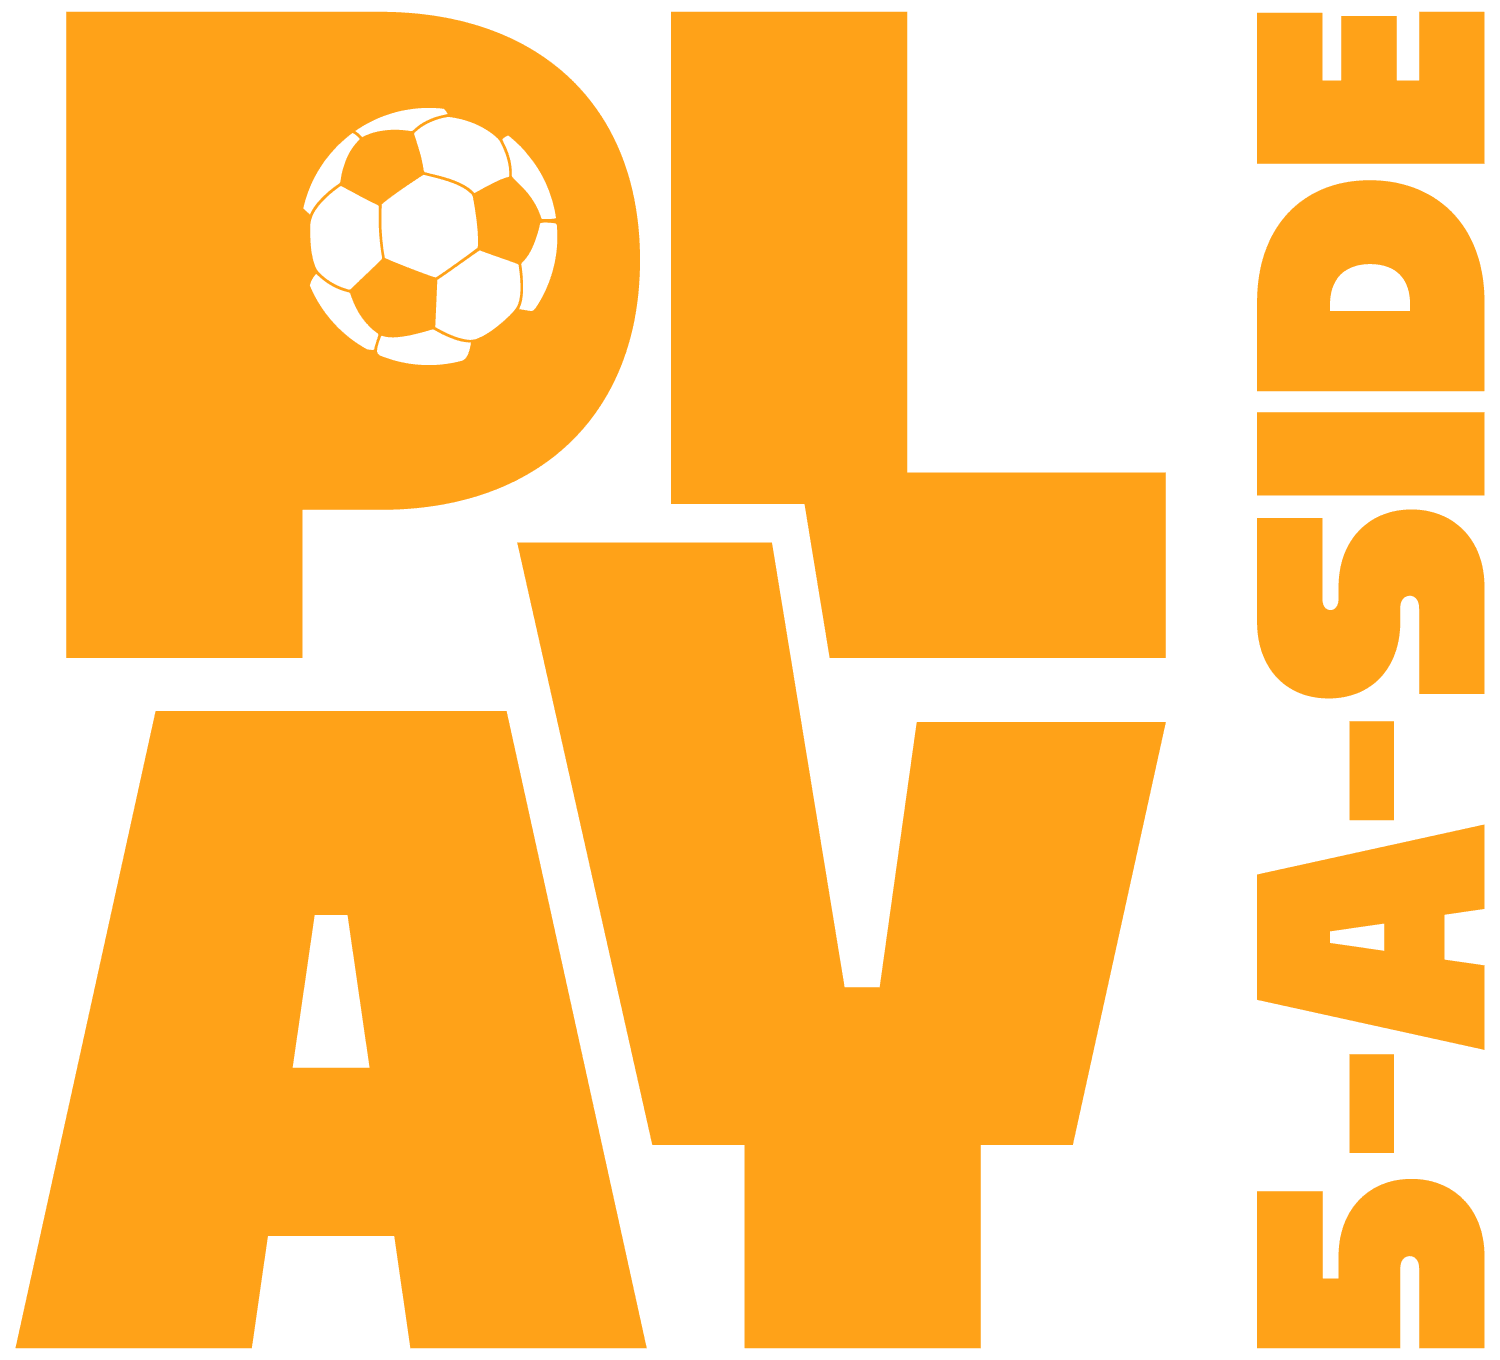 Play Football logo